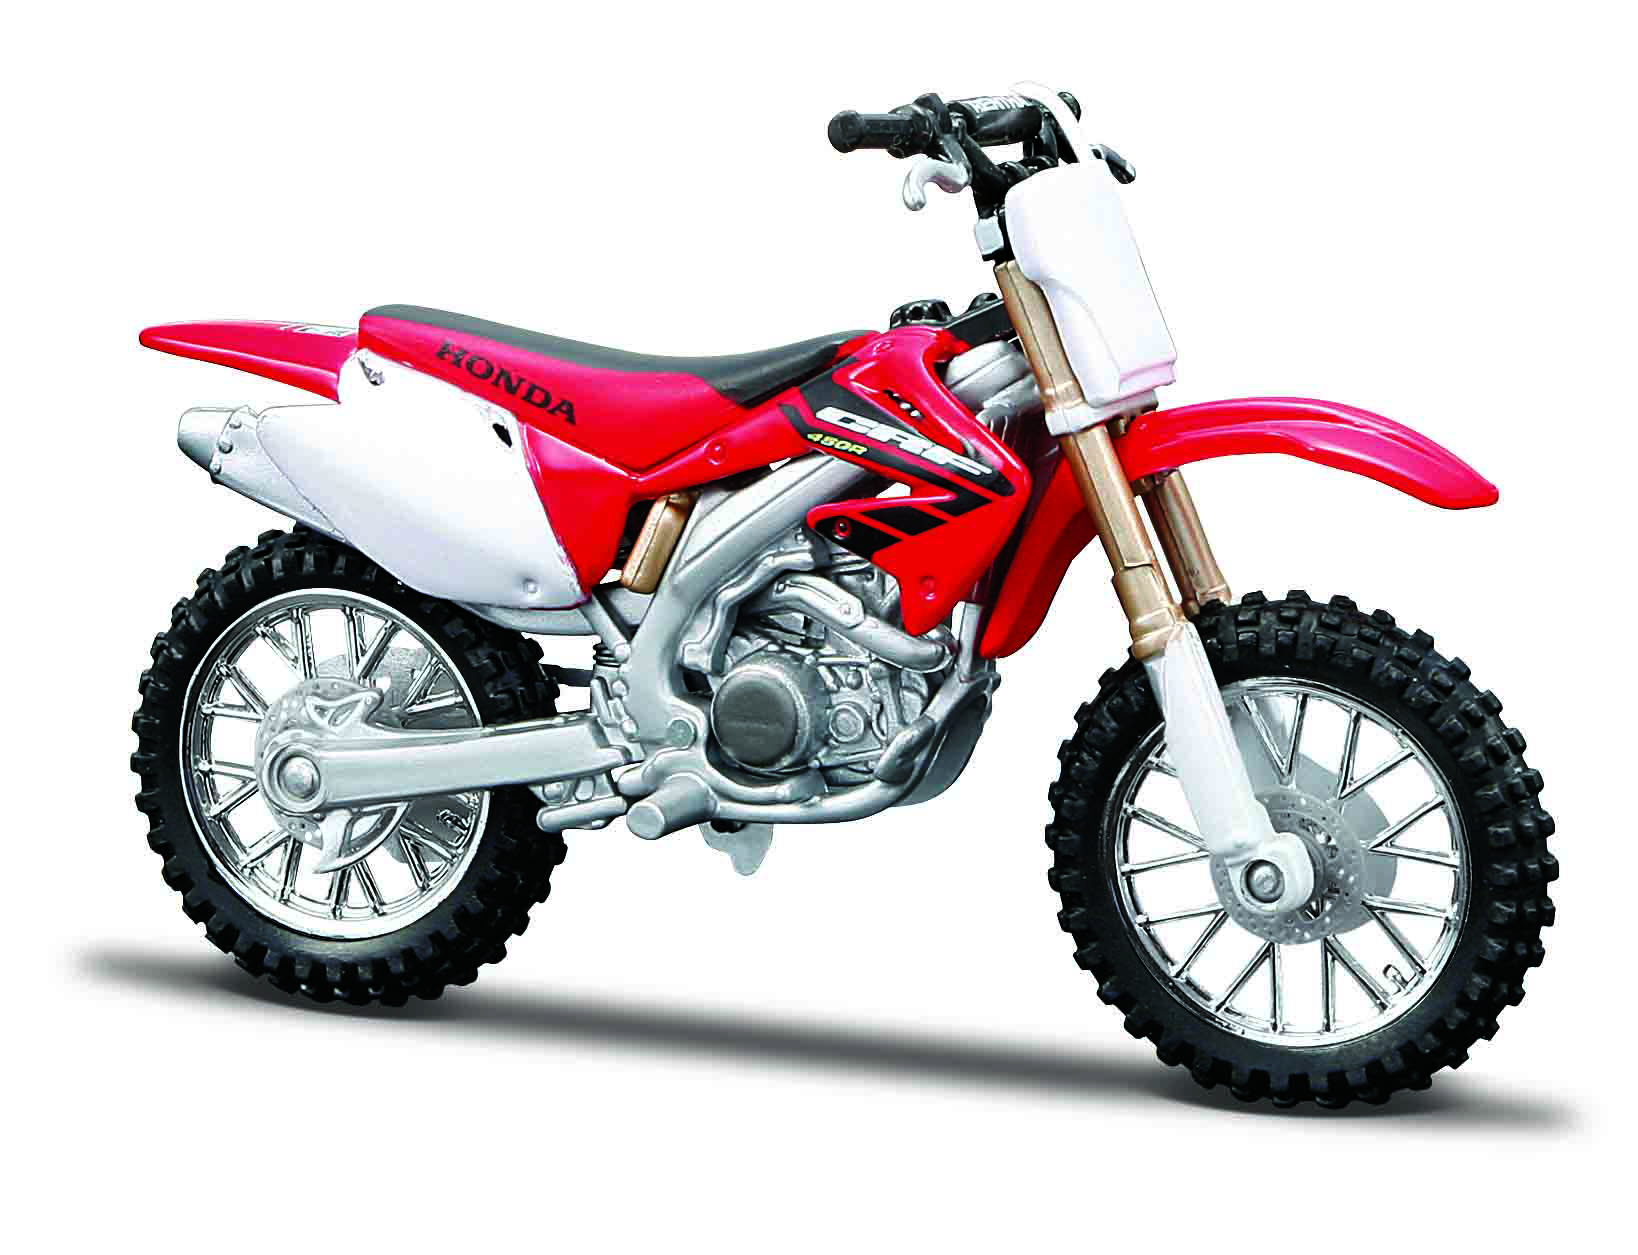 Macheta Motocicleta Bburago 1:18 Honda CRF450R Rosu, BB51030-51023